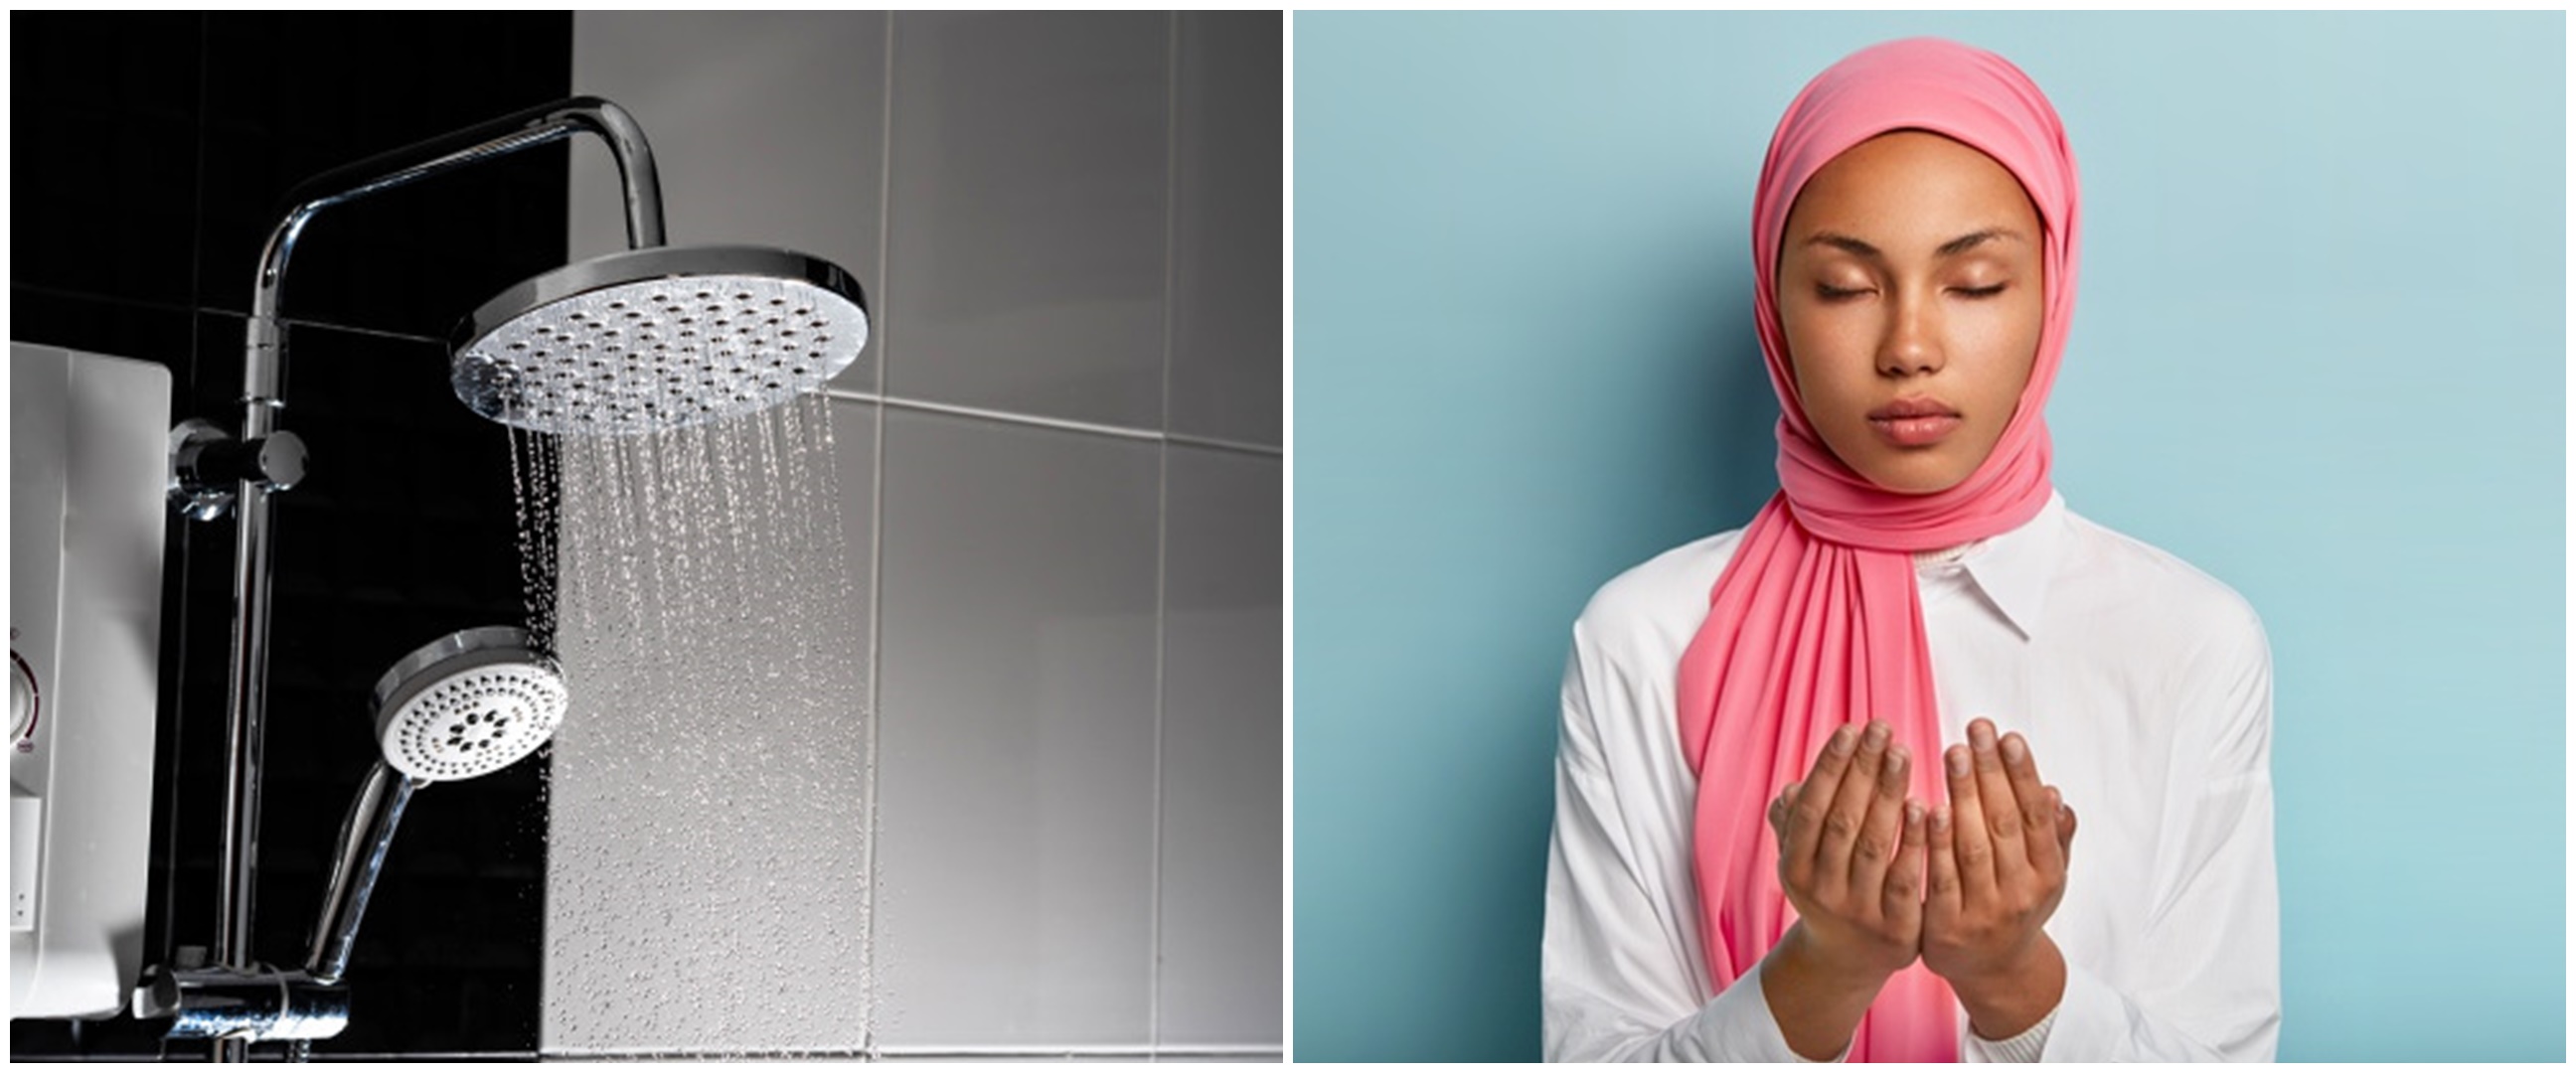 Doa dan tata cara mandi sebelum puasa Ramadhan, lengkap dengan artinya